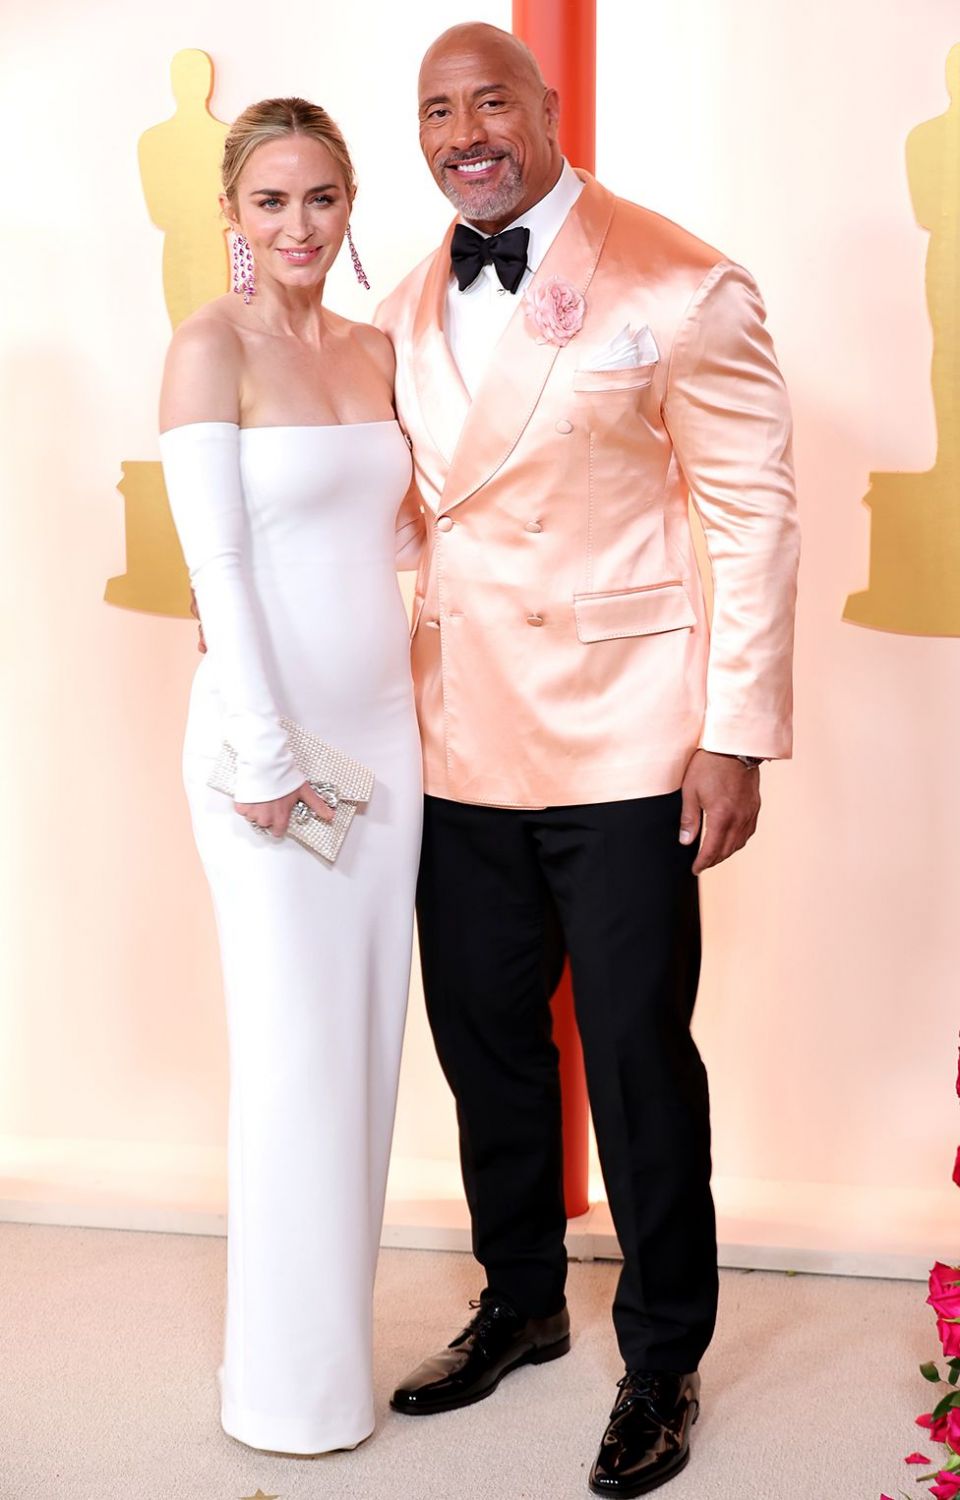 艾米莉·布朗特 (Emily Blunt) 和巨石强森 (Dwayne 'The Rock' Johnson) 出席 2023 年 3 月 12 日在加利福尼亚州好莱坞举行的第 95 届奥斯卡颁奖典礼